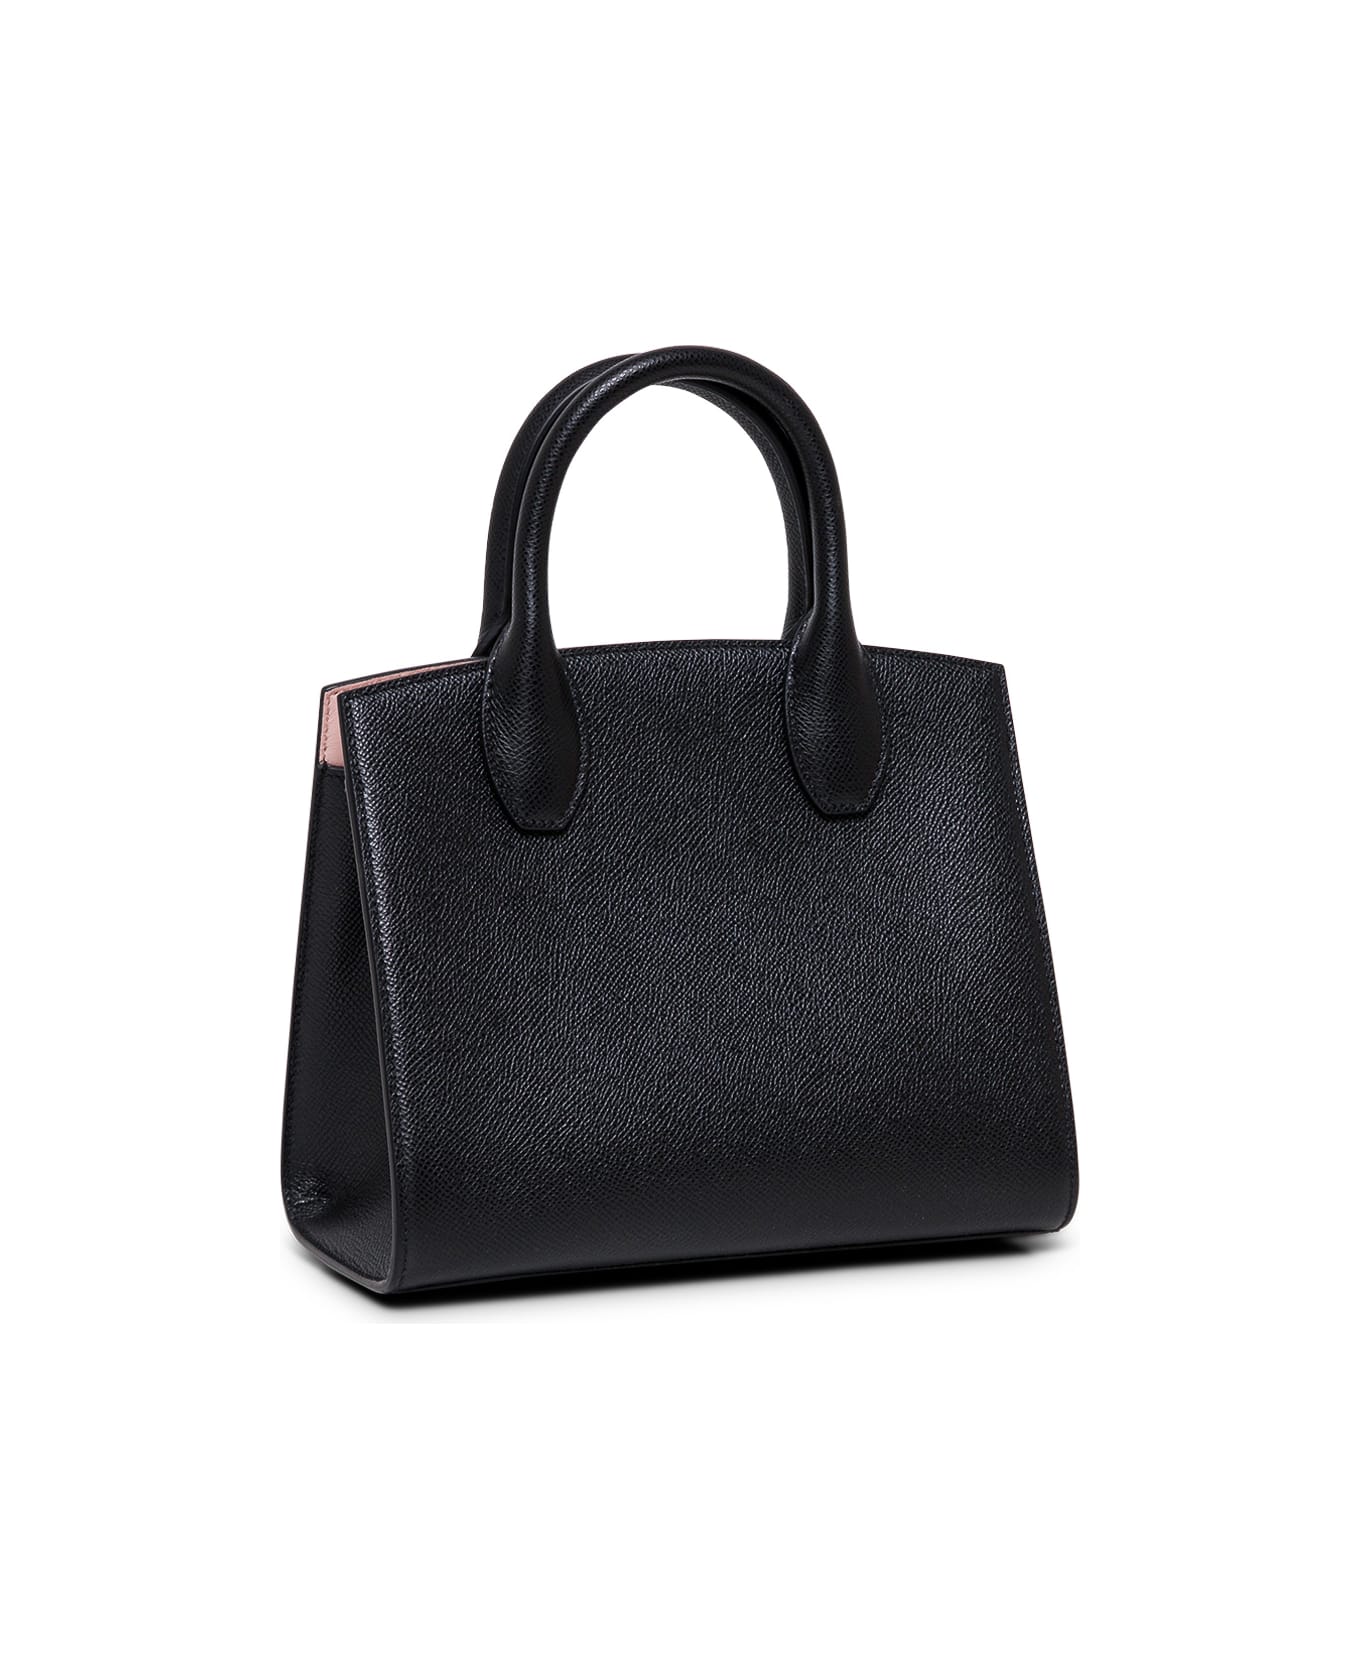 Ferragamo Studio Box Black Leather Handbag - Black